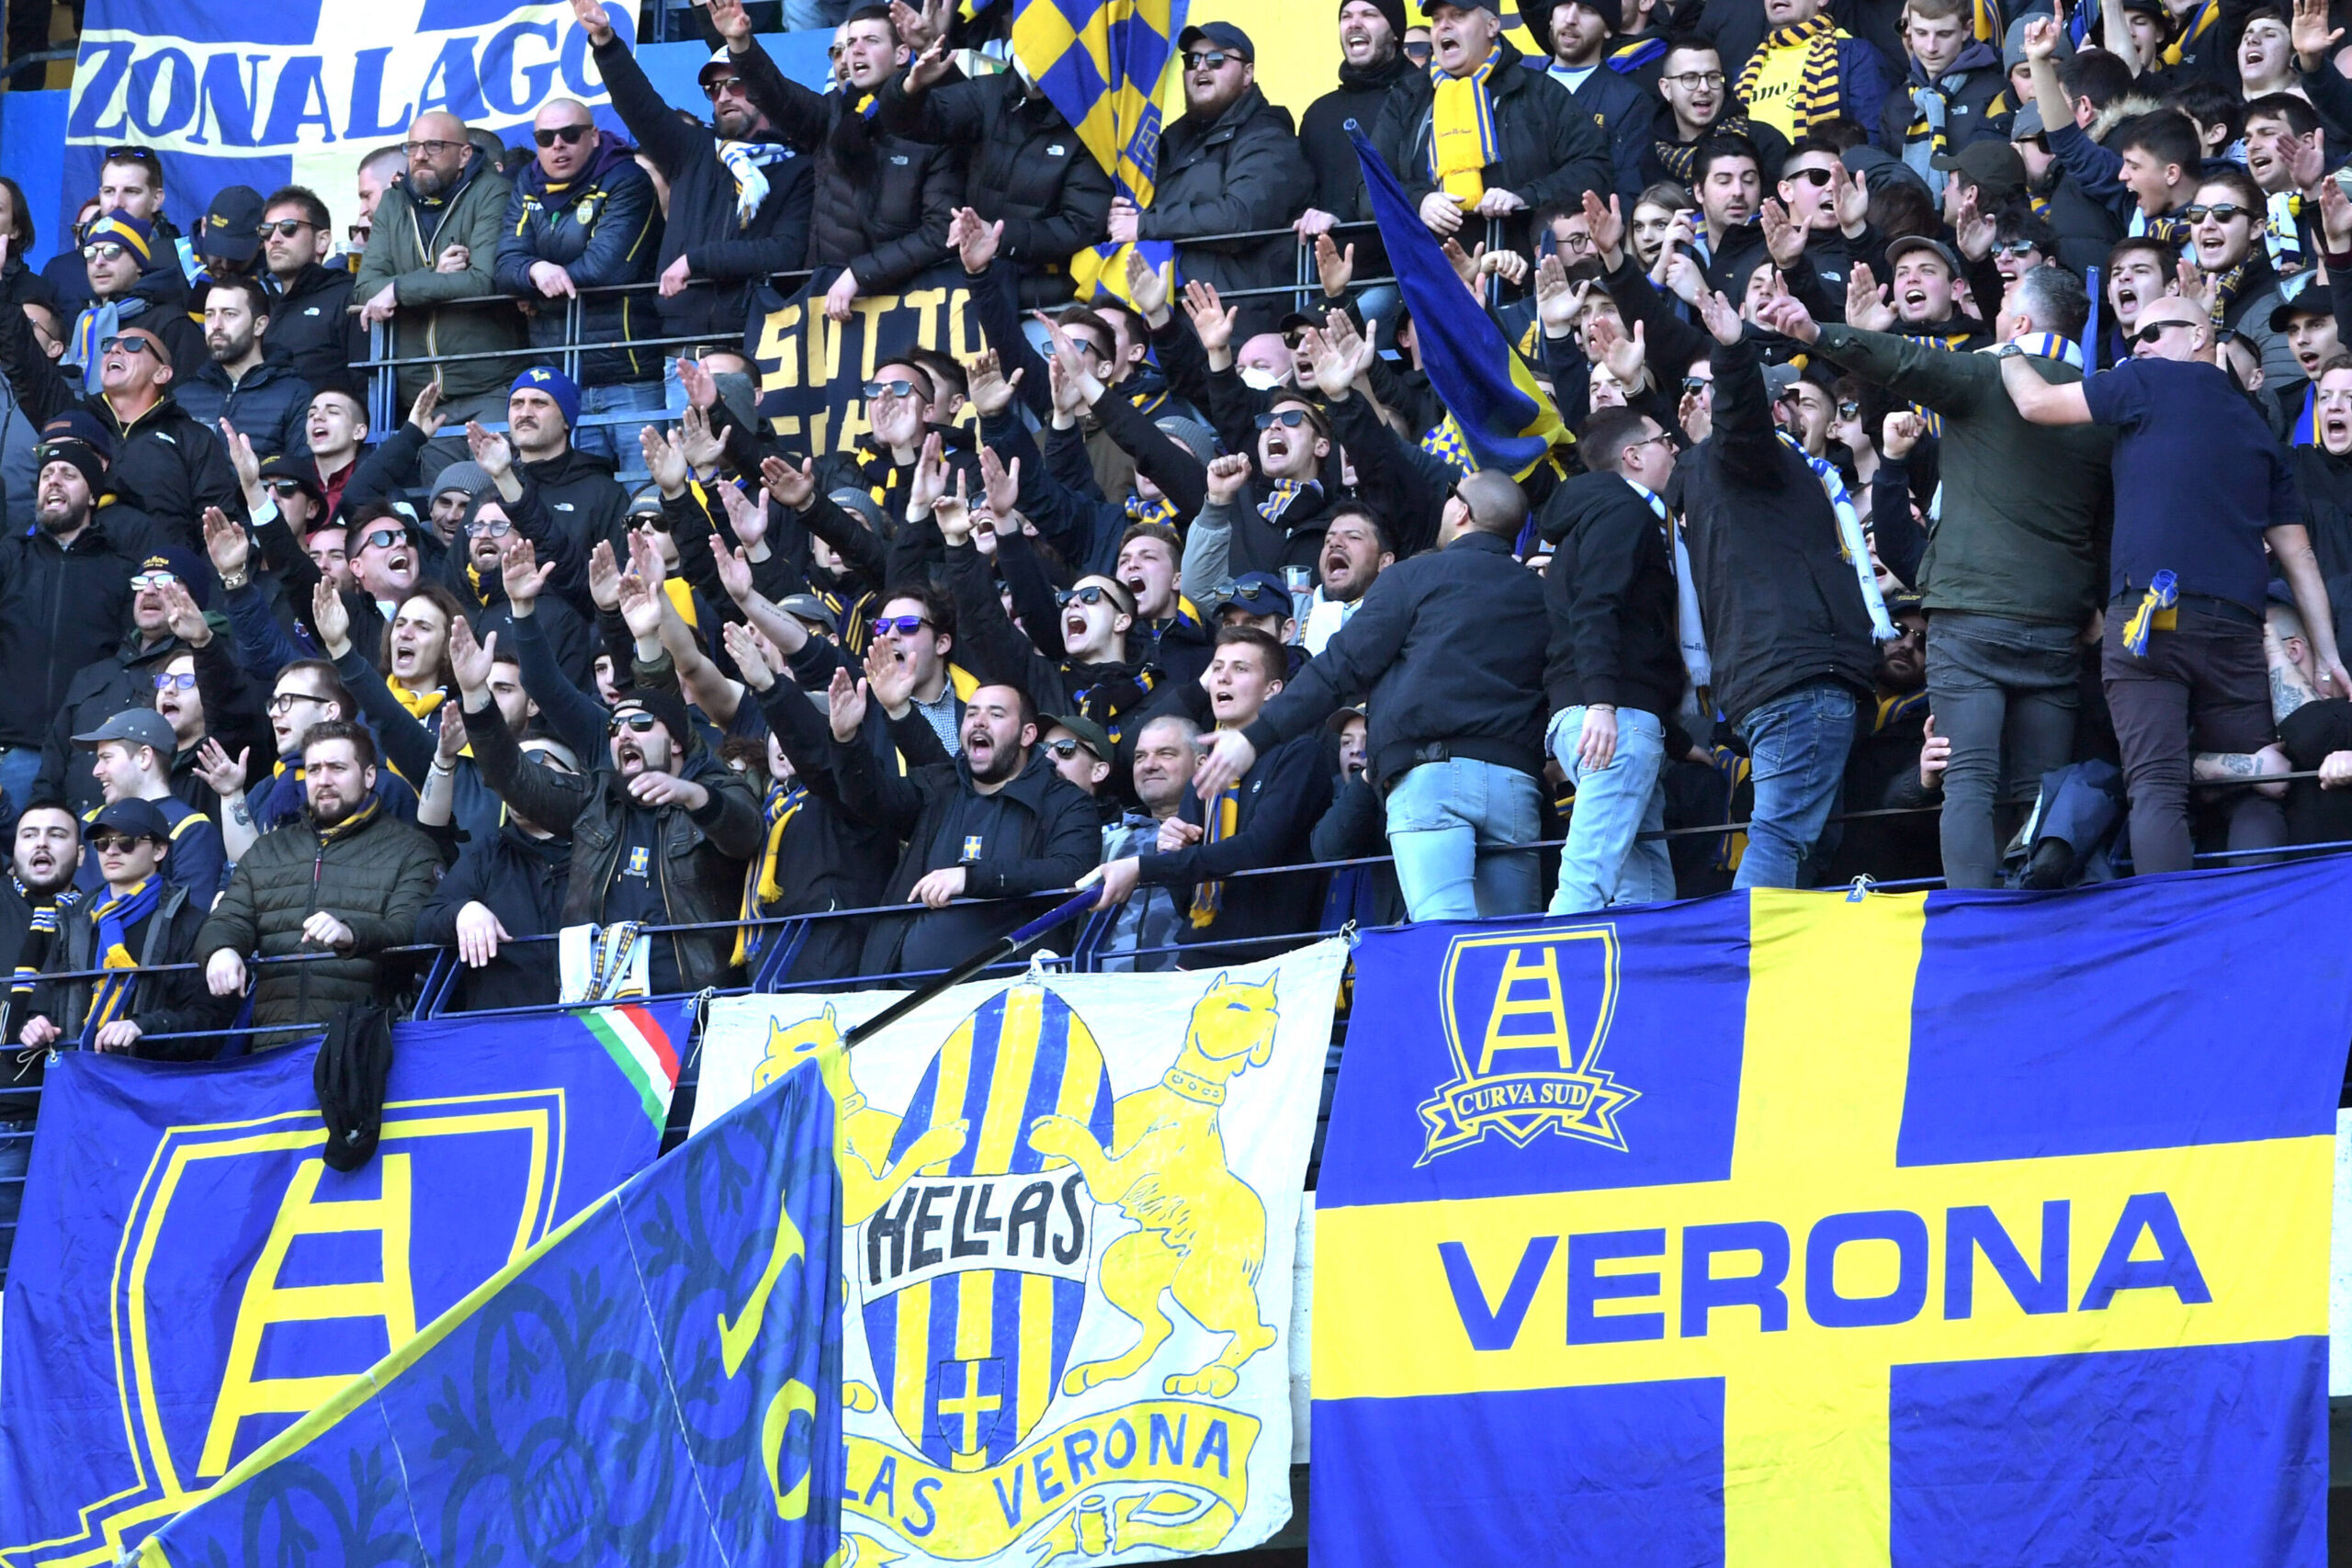 Die Ultras von Hellas Verona fielen am Sonntag gegen Neapel wiederholt durch rassistische Gesänge auf.